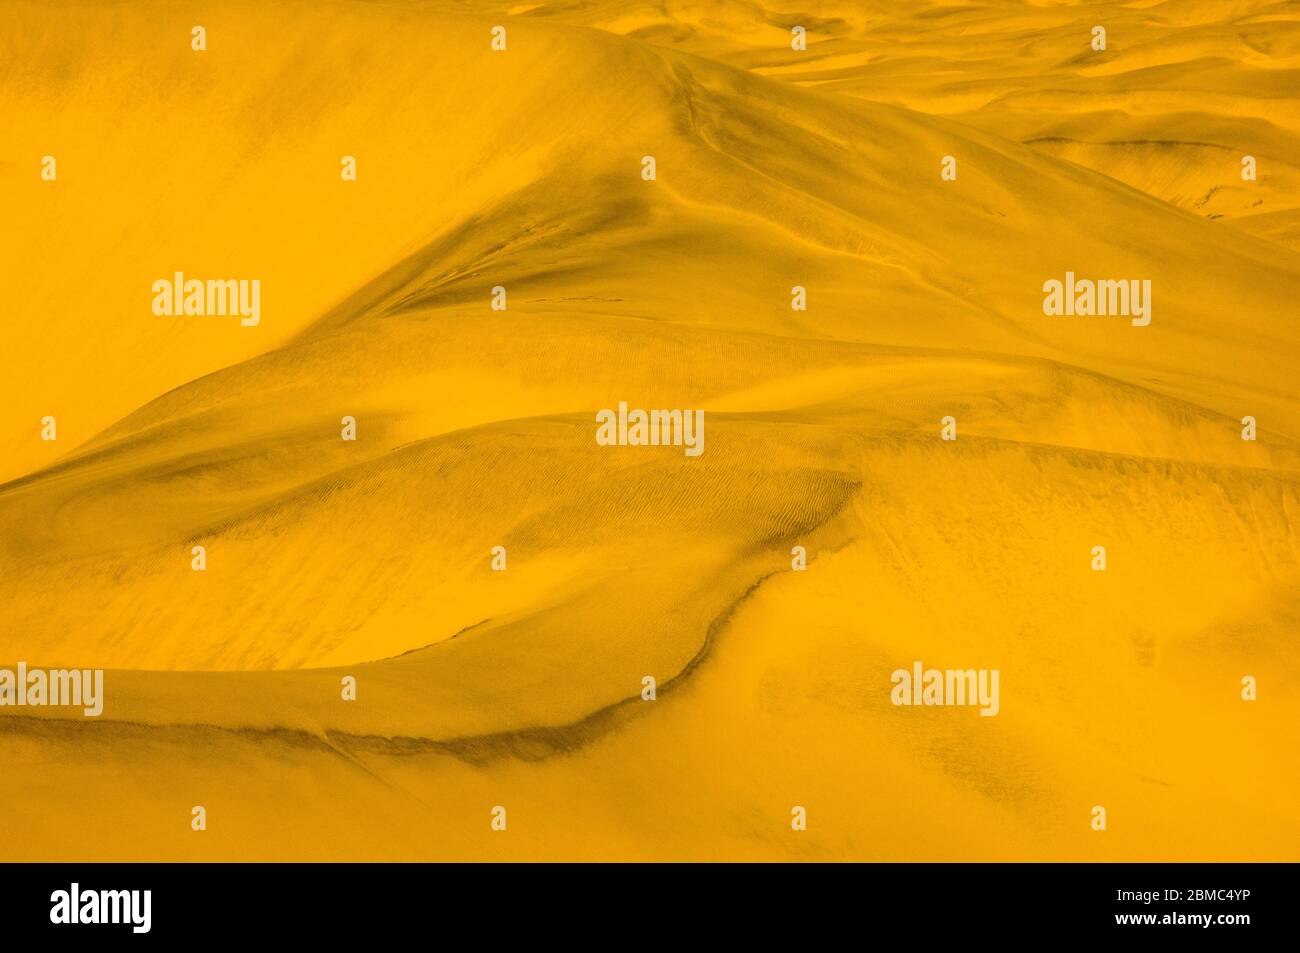 impressionnantes dunes de sable avec vagues et motifs Banque D'Images